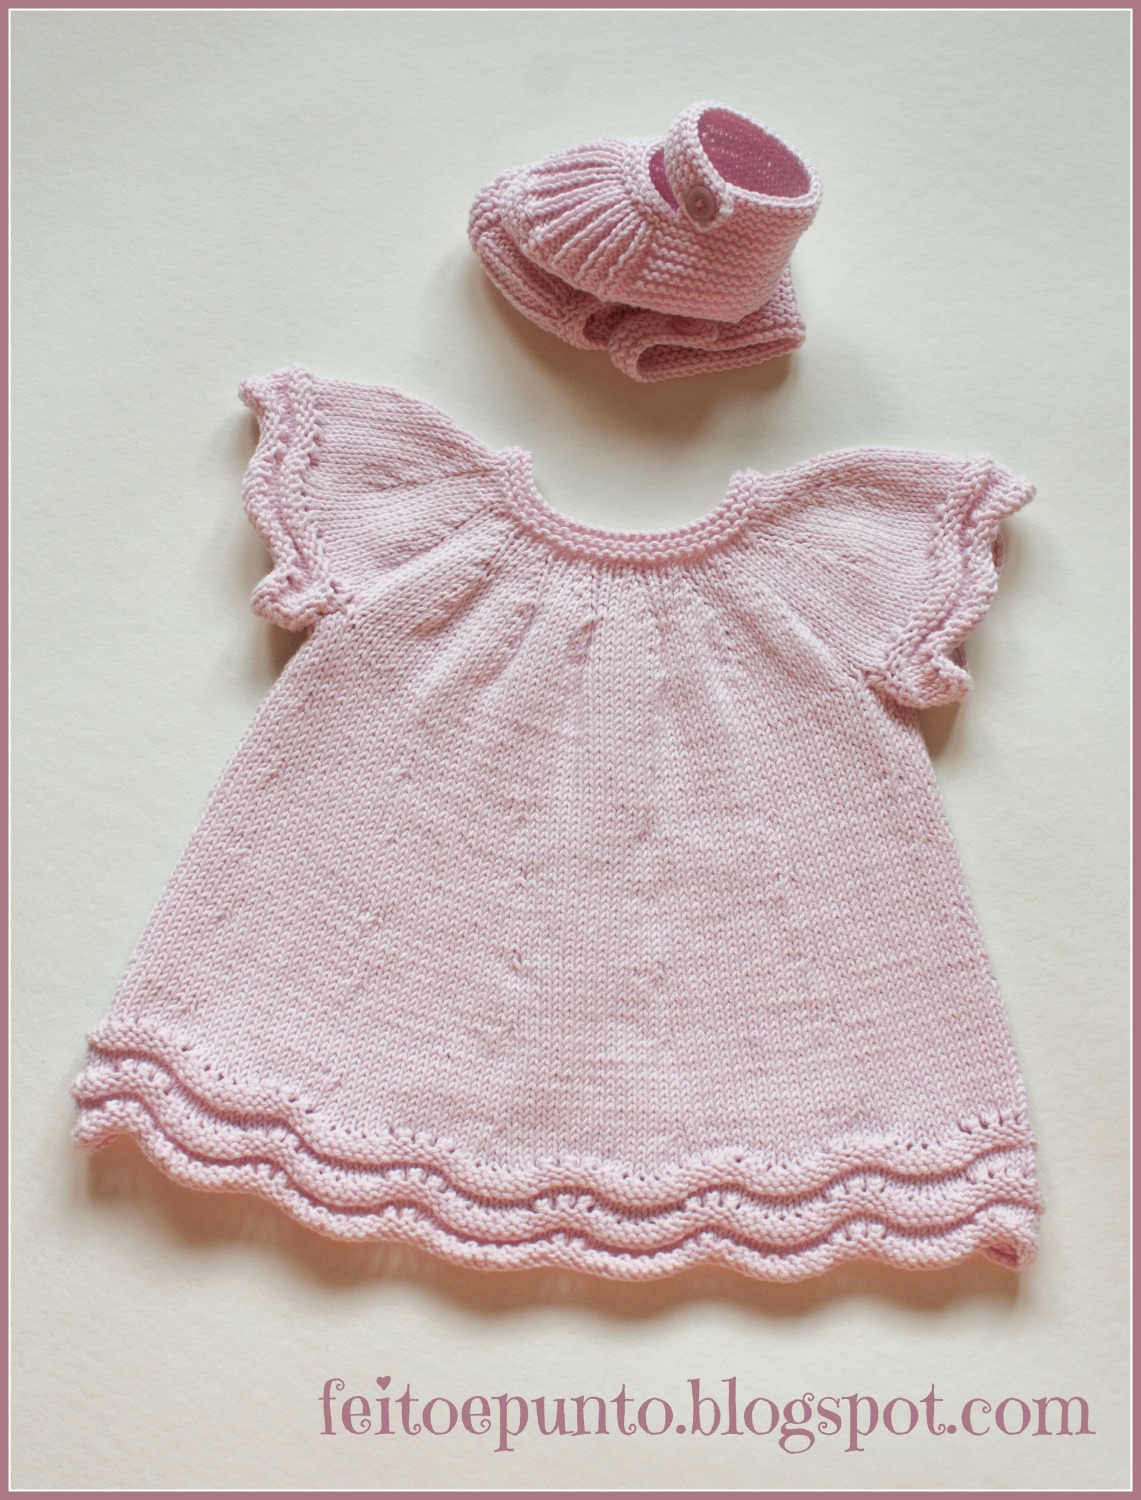 feitoepunto: Cómo se el vestido de punto en algodón rosa